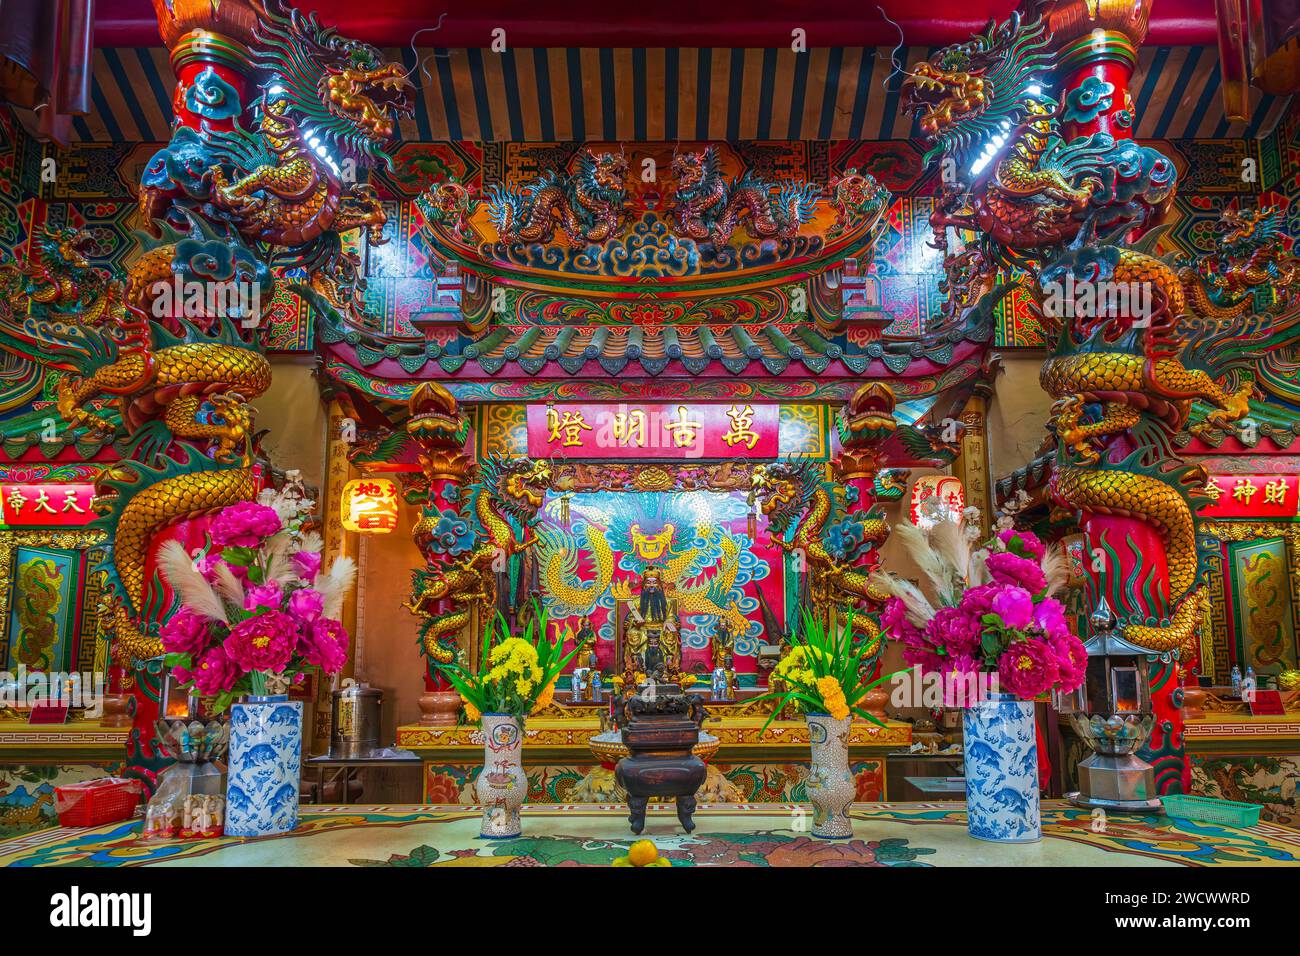 Thailand, Provinz trat, trat, der städtische Säulen-Schrein, der im Stil eines chinesischen Pavillons erbaut wurde Stockfoto